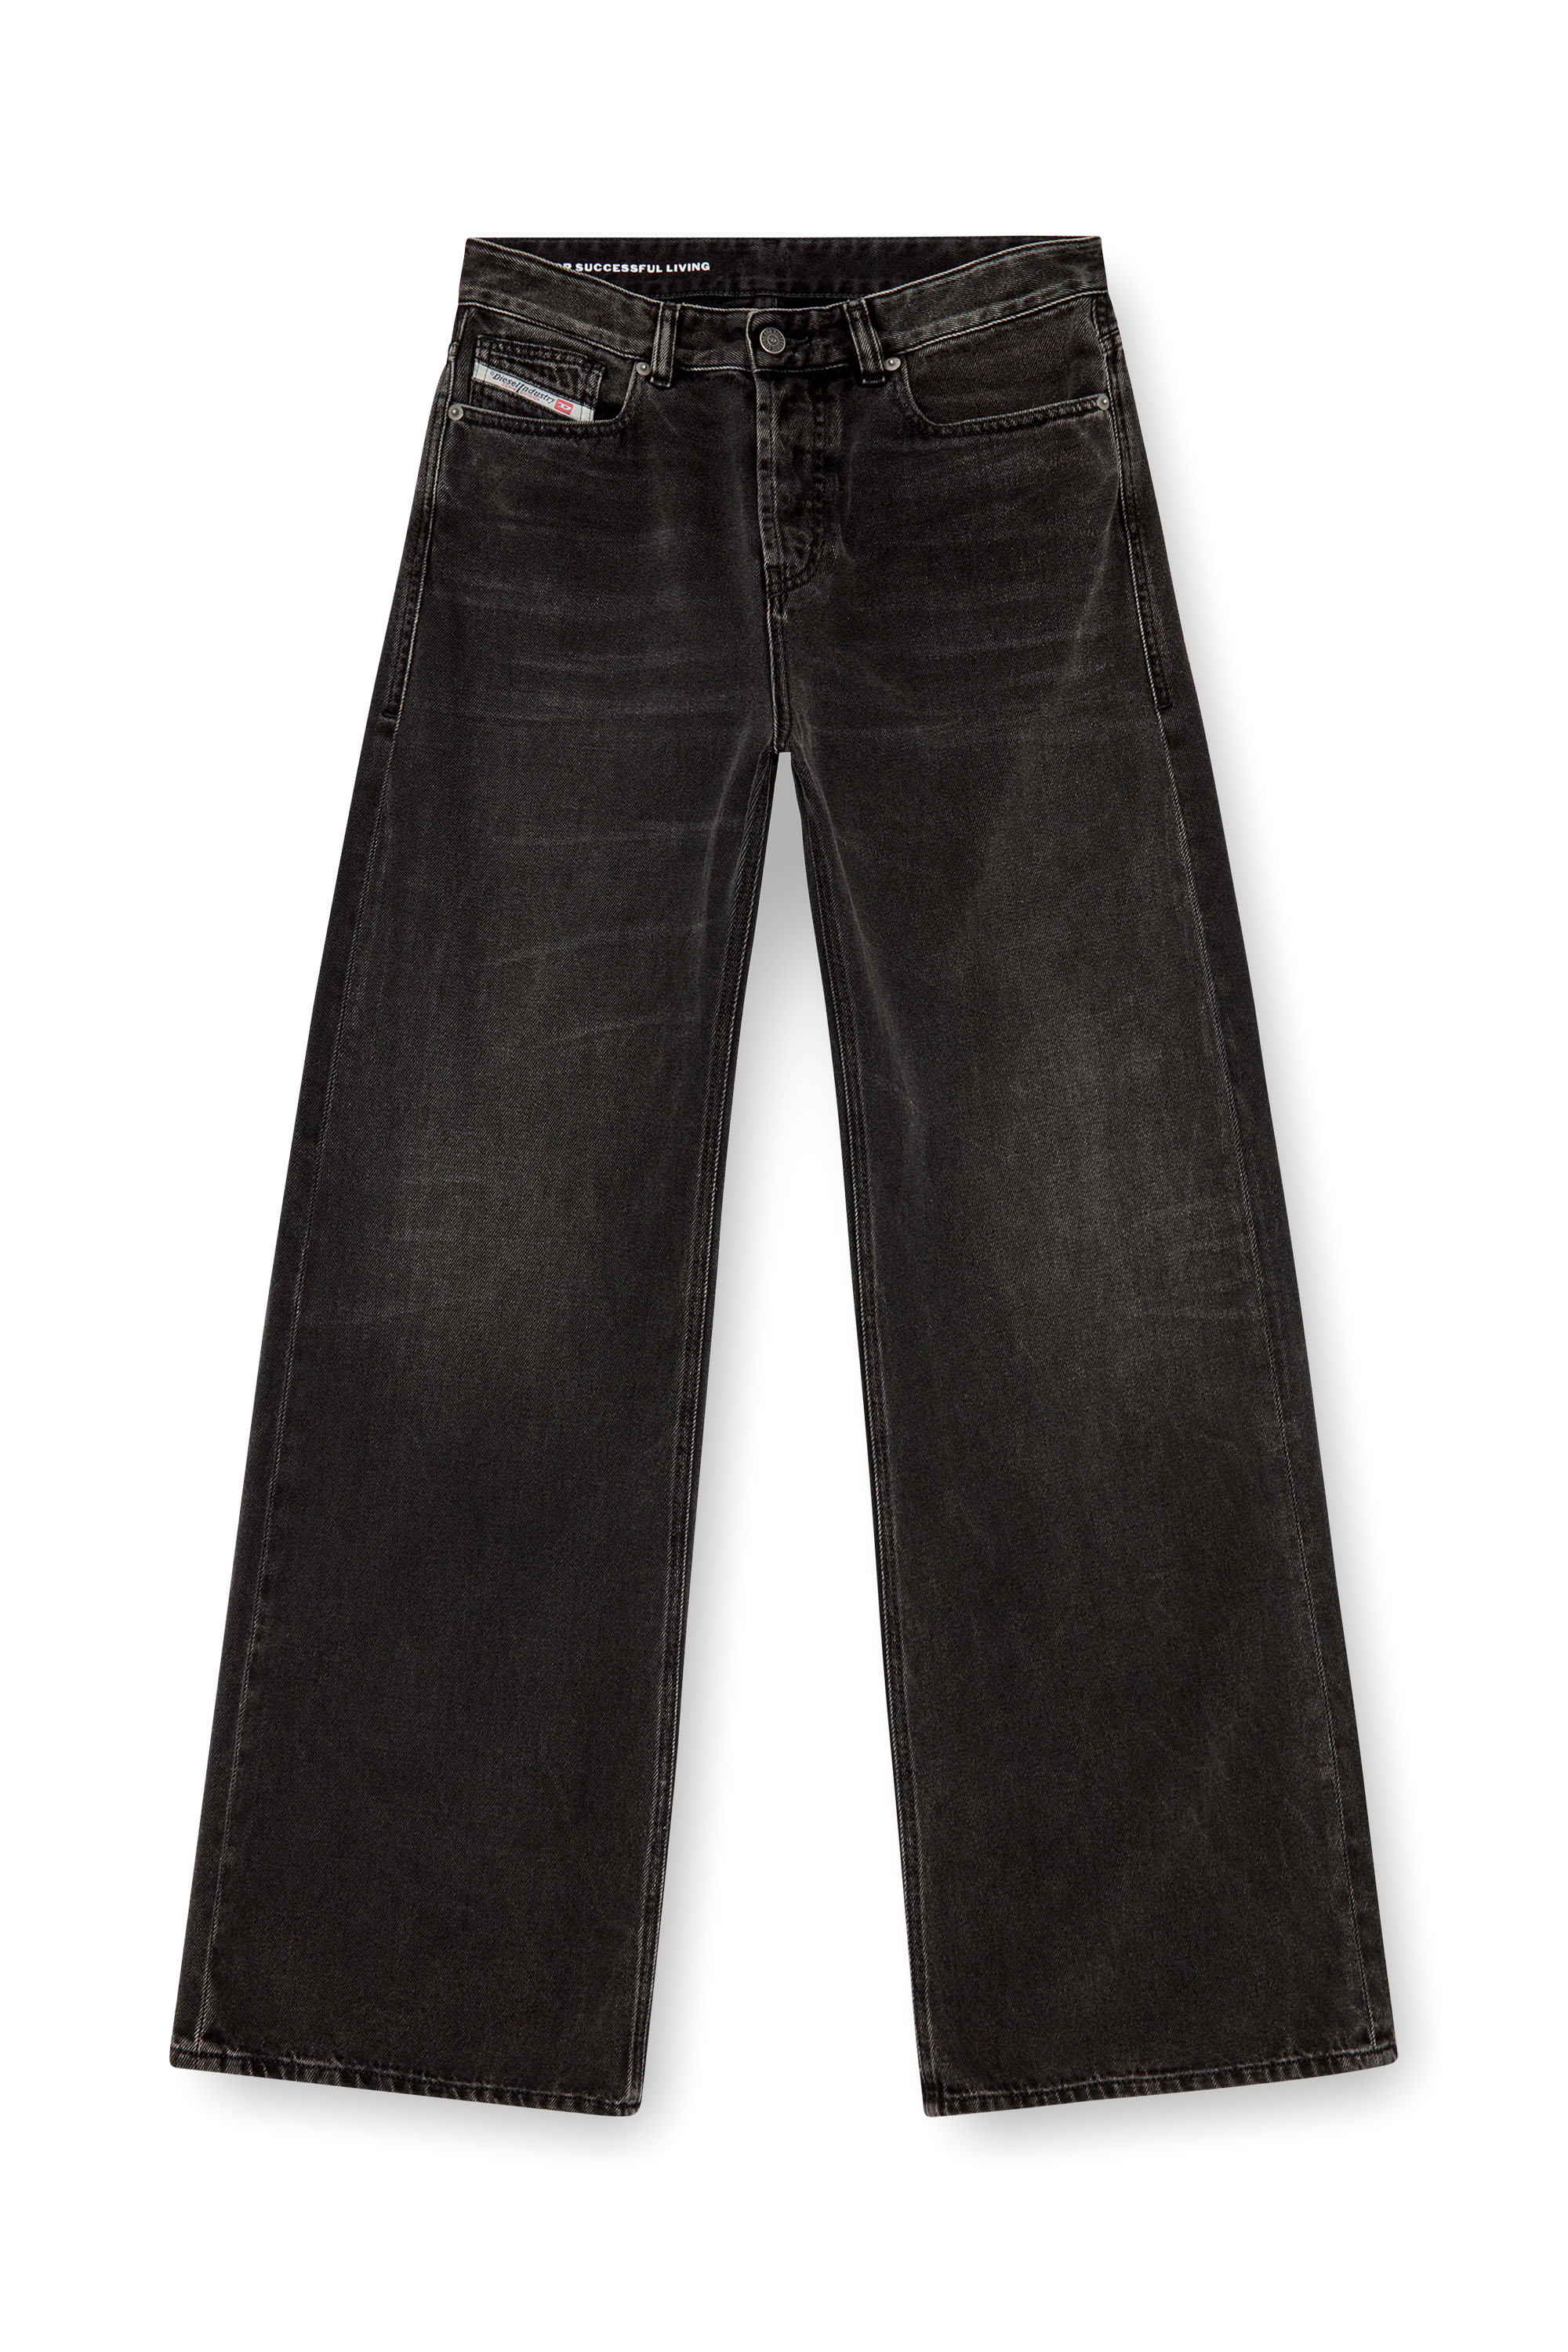 Diesel - Woman Straight Jeans 1996 D-Sire 09J96, Black/Dark grey - Image 5